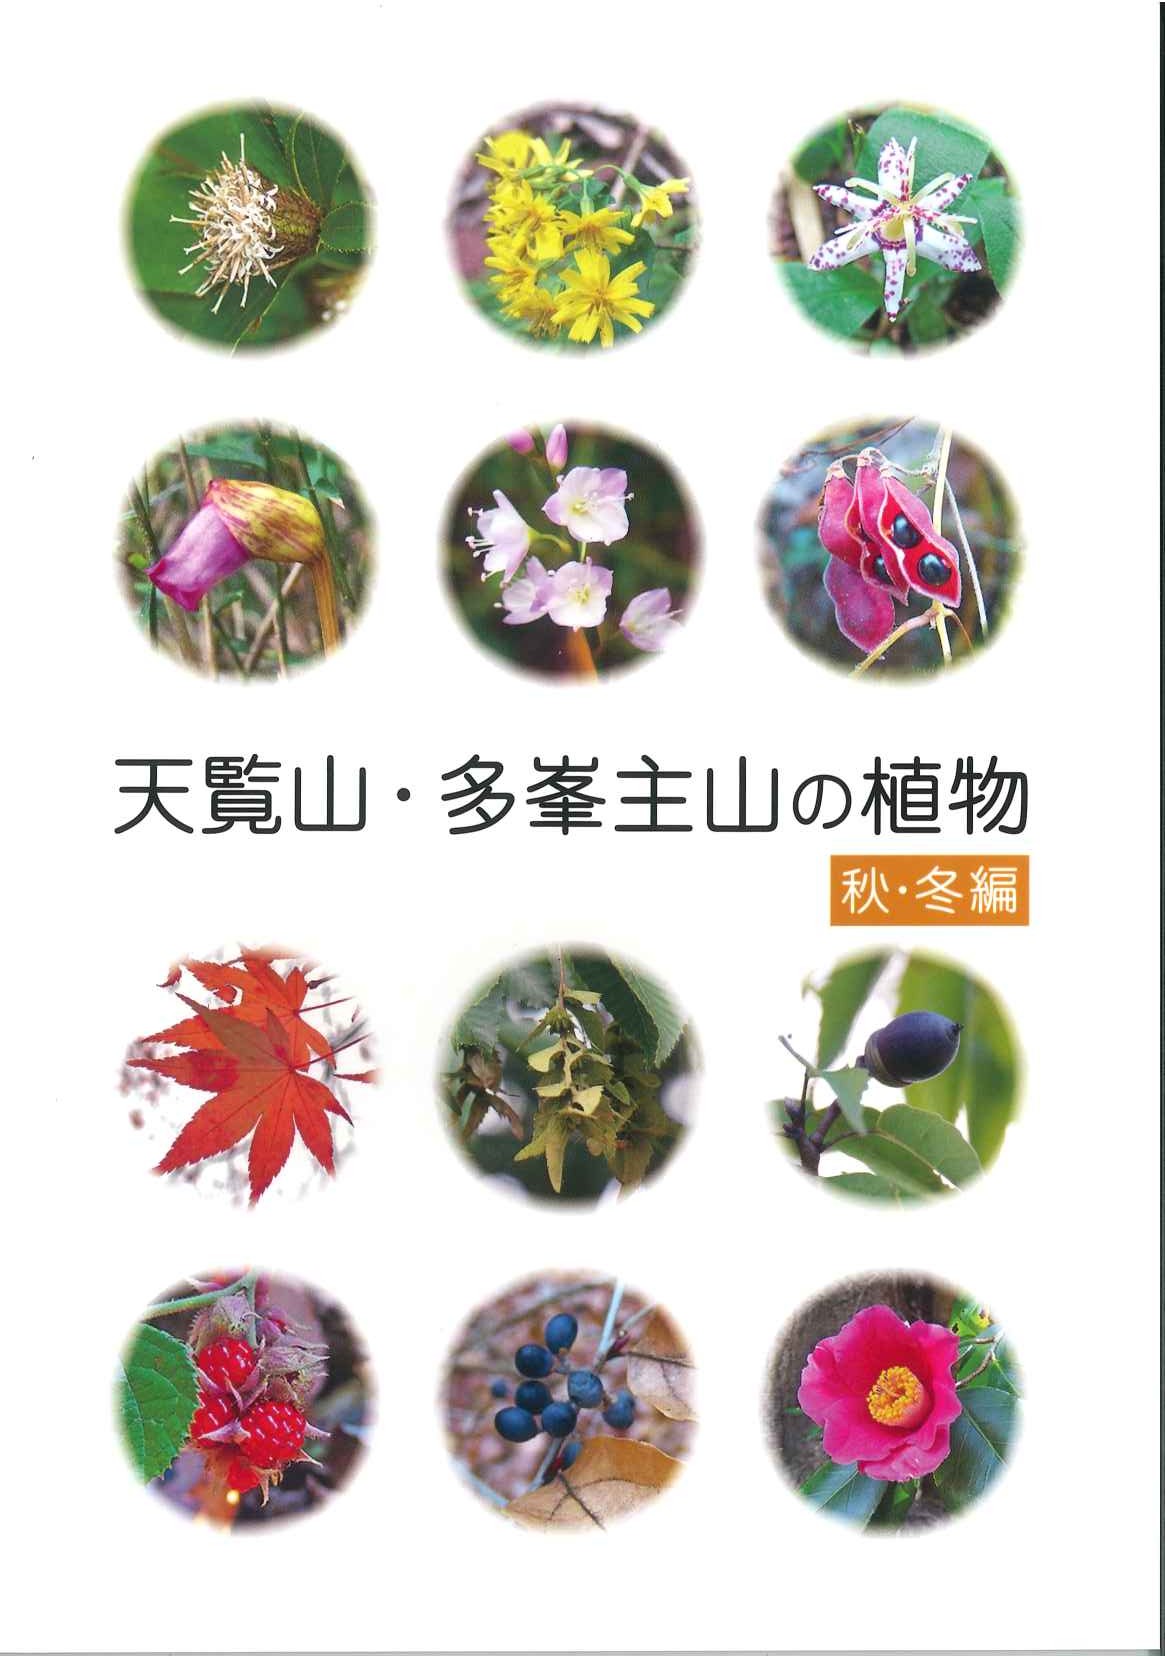 天覧山・多峯主山の植物秋・冬編の表紙の写真